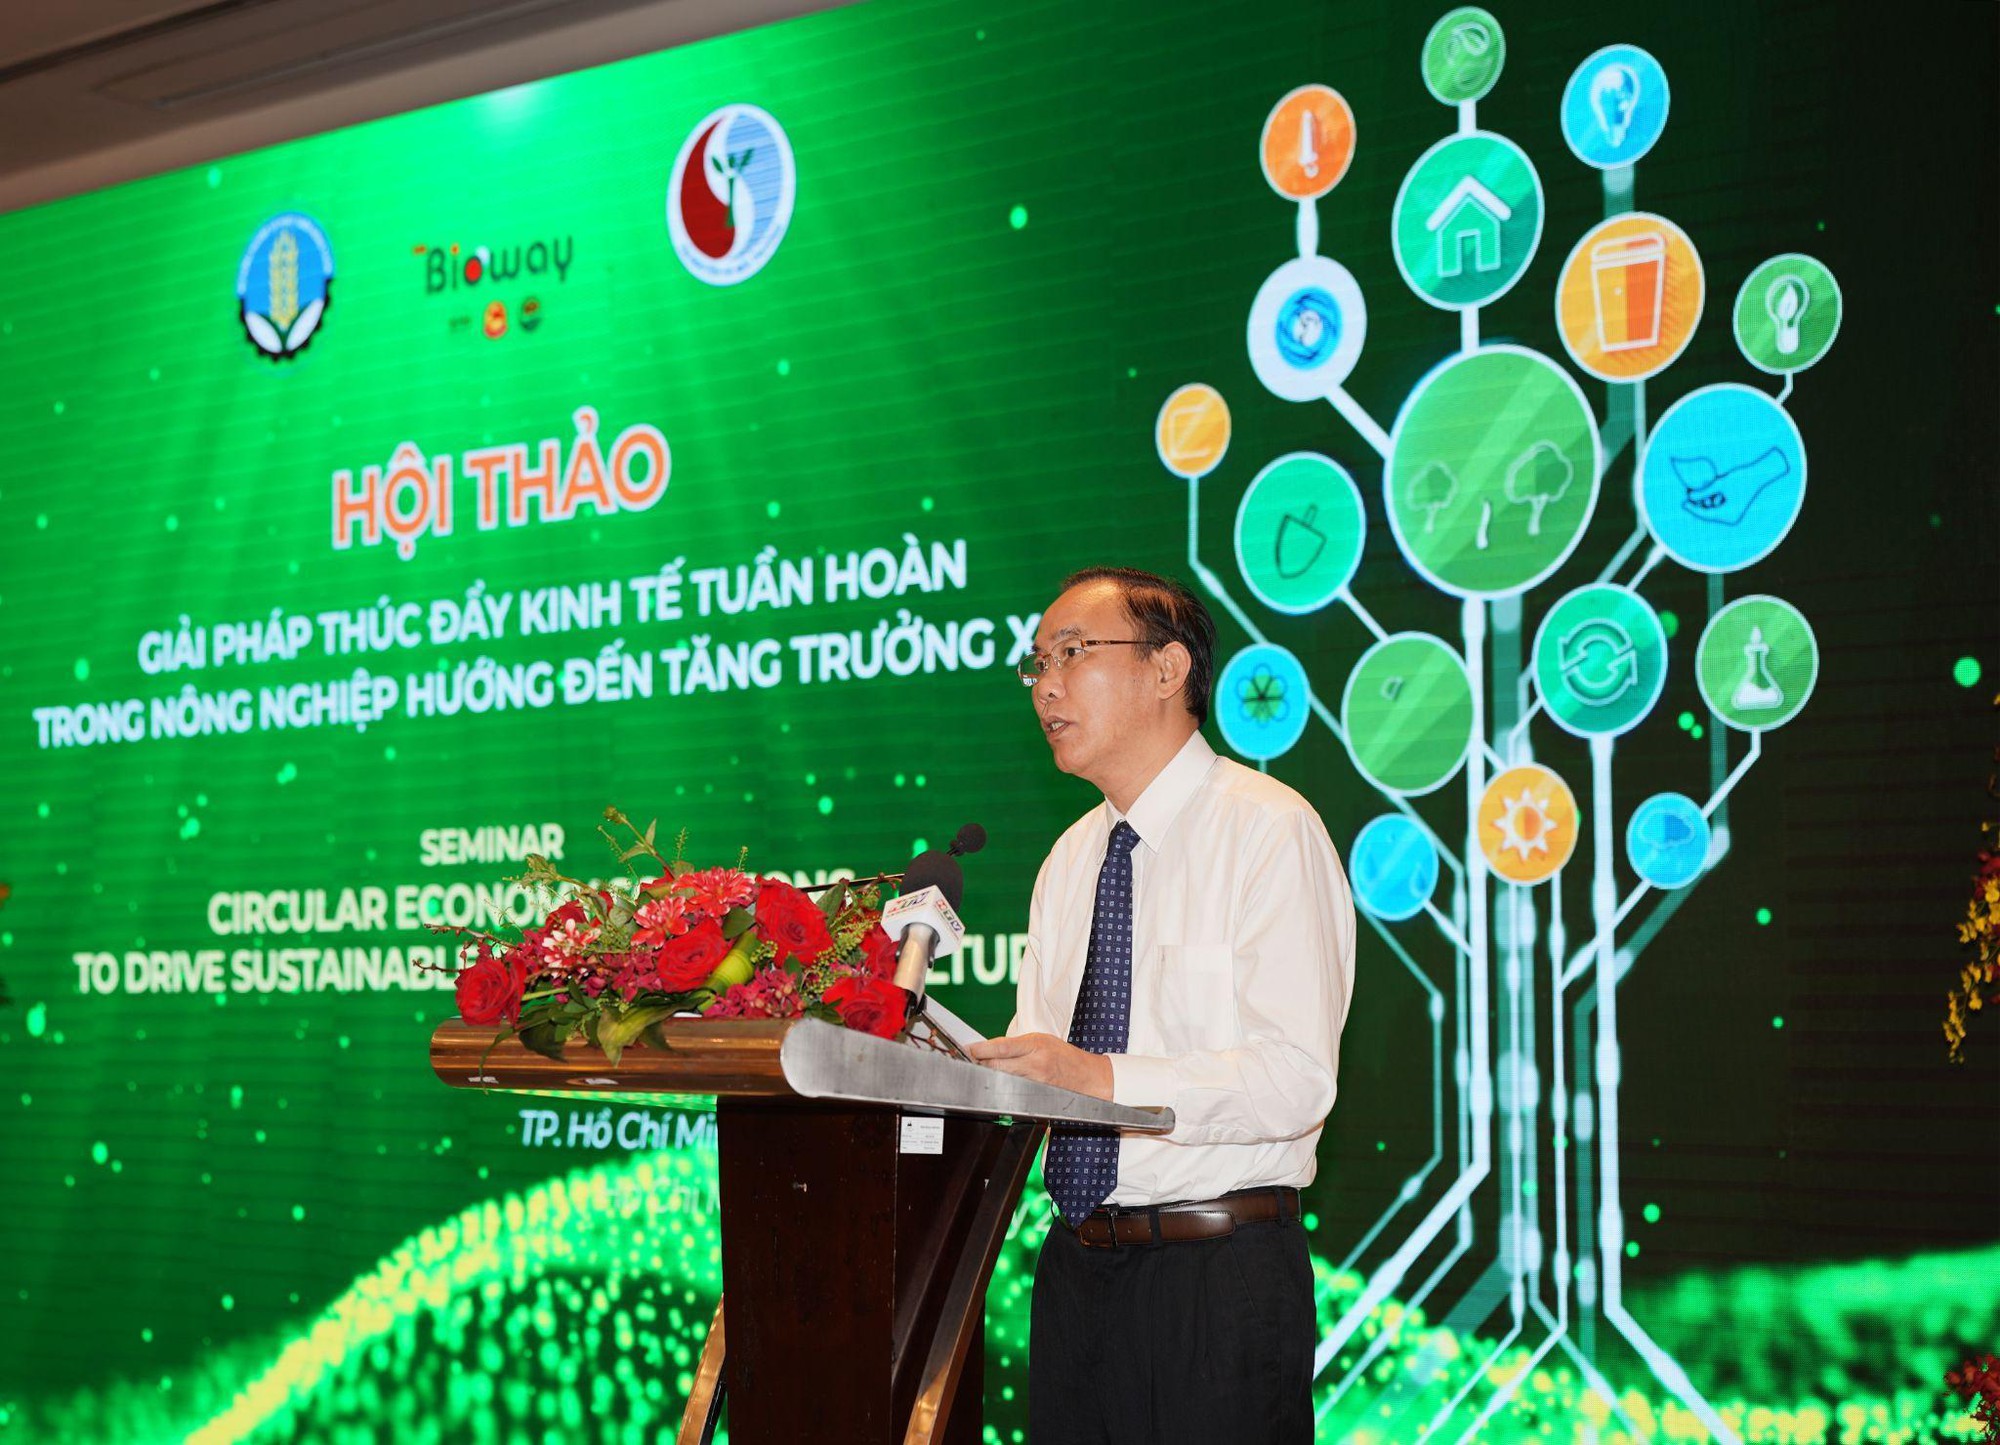 Bioway Việt Nam chú trọng thúc đẩy kinh tế tuần hoàn trong nông nghiệp hướng đến tăng trưởng xanh - Ảnh 2.